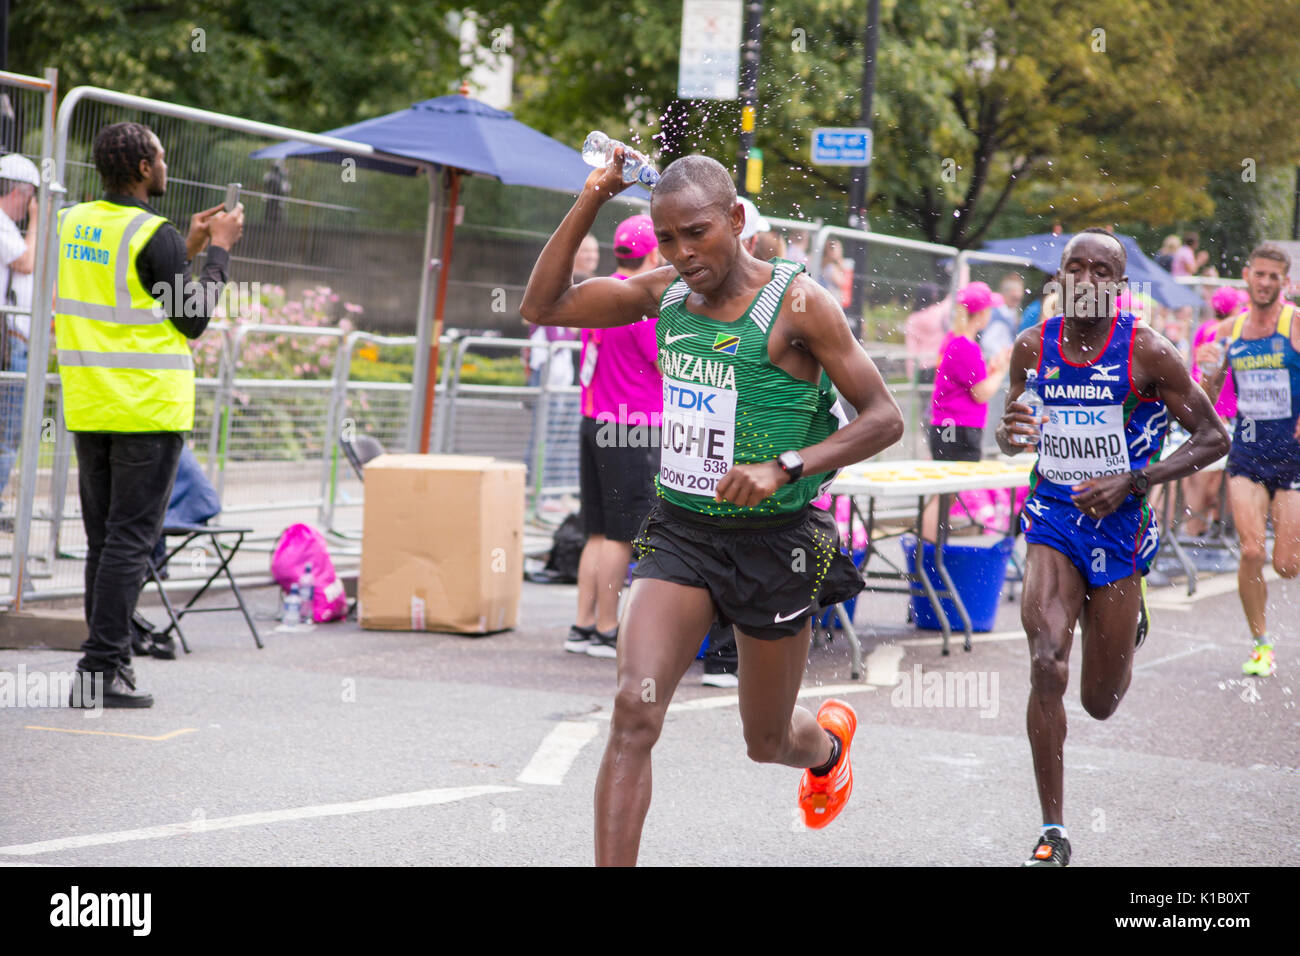 6 agosto '17 London: HUCHE tanzaniano e namibiane REONARD raffreddare fino alla stazione di acqua durante la IAAF 2017 Campionati mondiali di atletica di Campionato Uomini Maratona Foto Stock